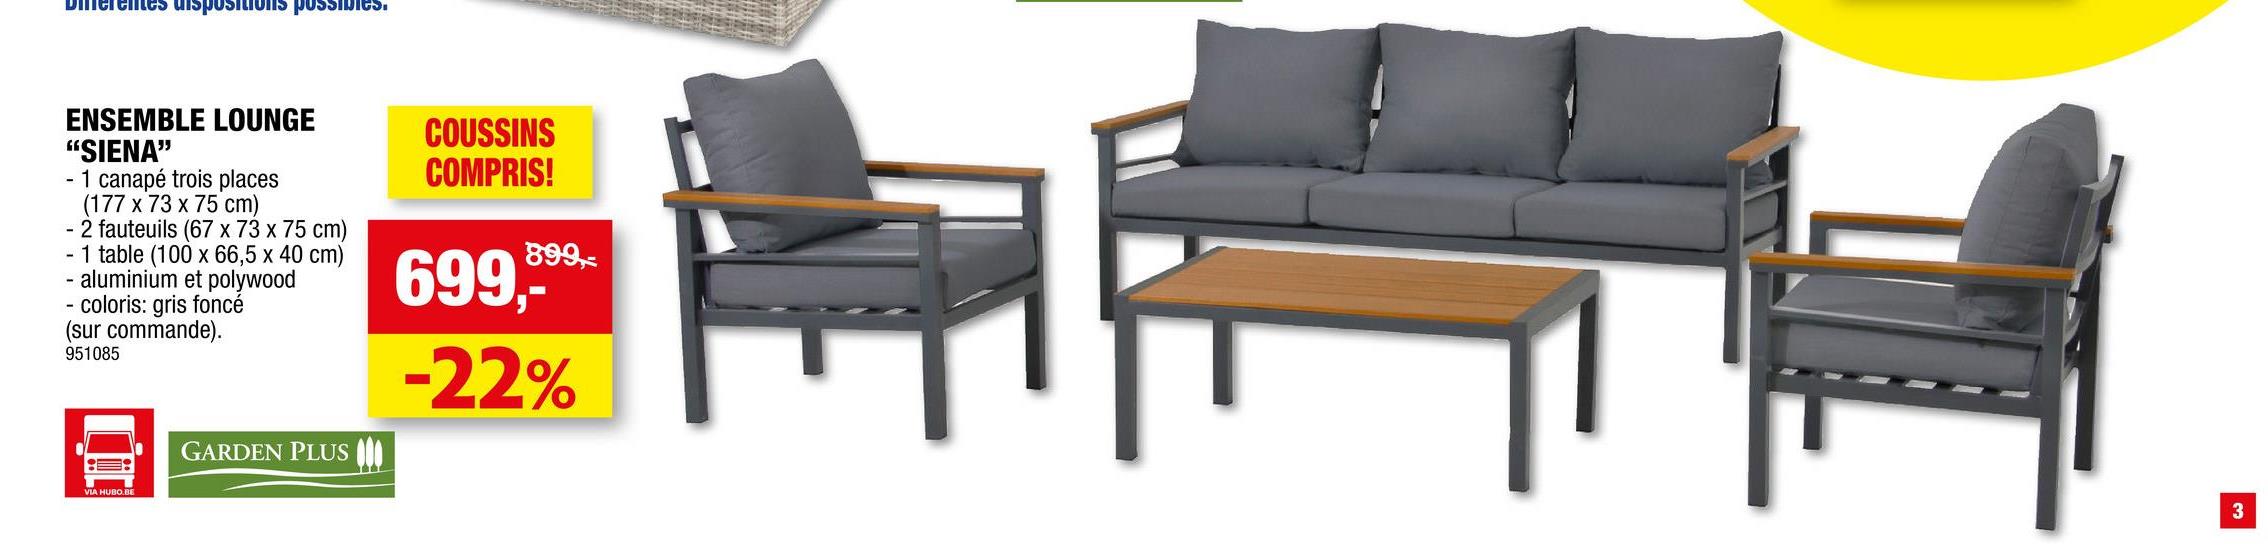 Diferentes dispositions possibles.
ENSEMBLE LOUNGE
"SIENA"
- 1 canapé trois places
(177 x 73 x 75 cm)
- 2 fauteuils (67 x 73 x 75 cm)
1 table (100 x 66,5 x 40 cm)
aluminium et polywood
coloris: gris foncé
(sur commande).
951085
-
GARDEN PLUS
COUSSINS
COMPRIS!
899,-
699,-*
-22%
3